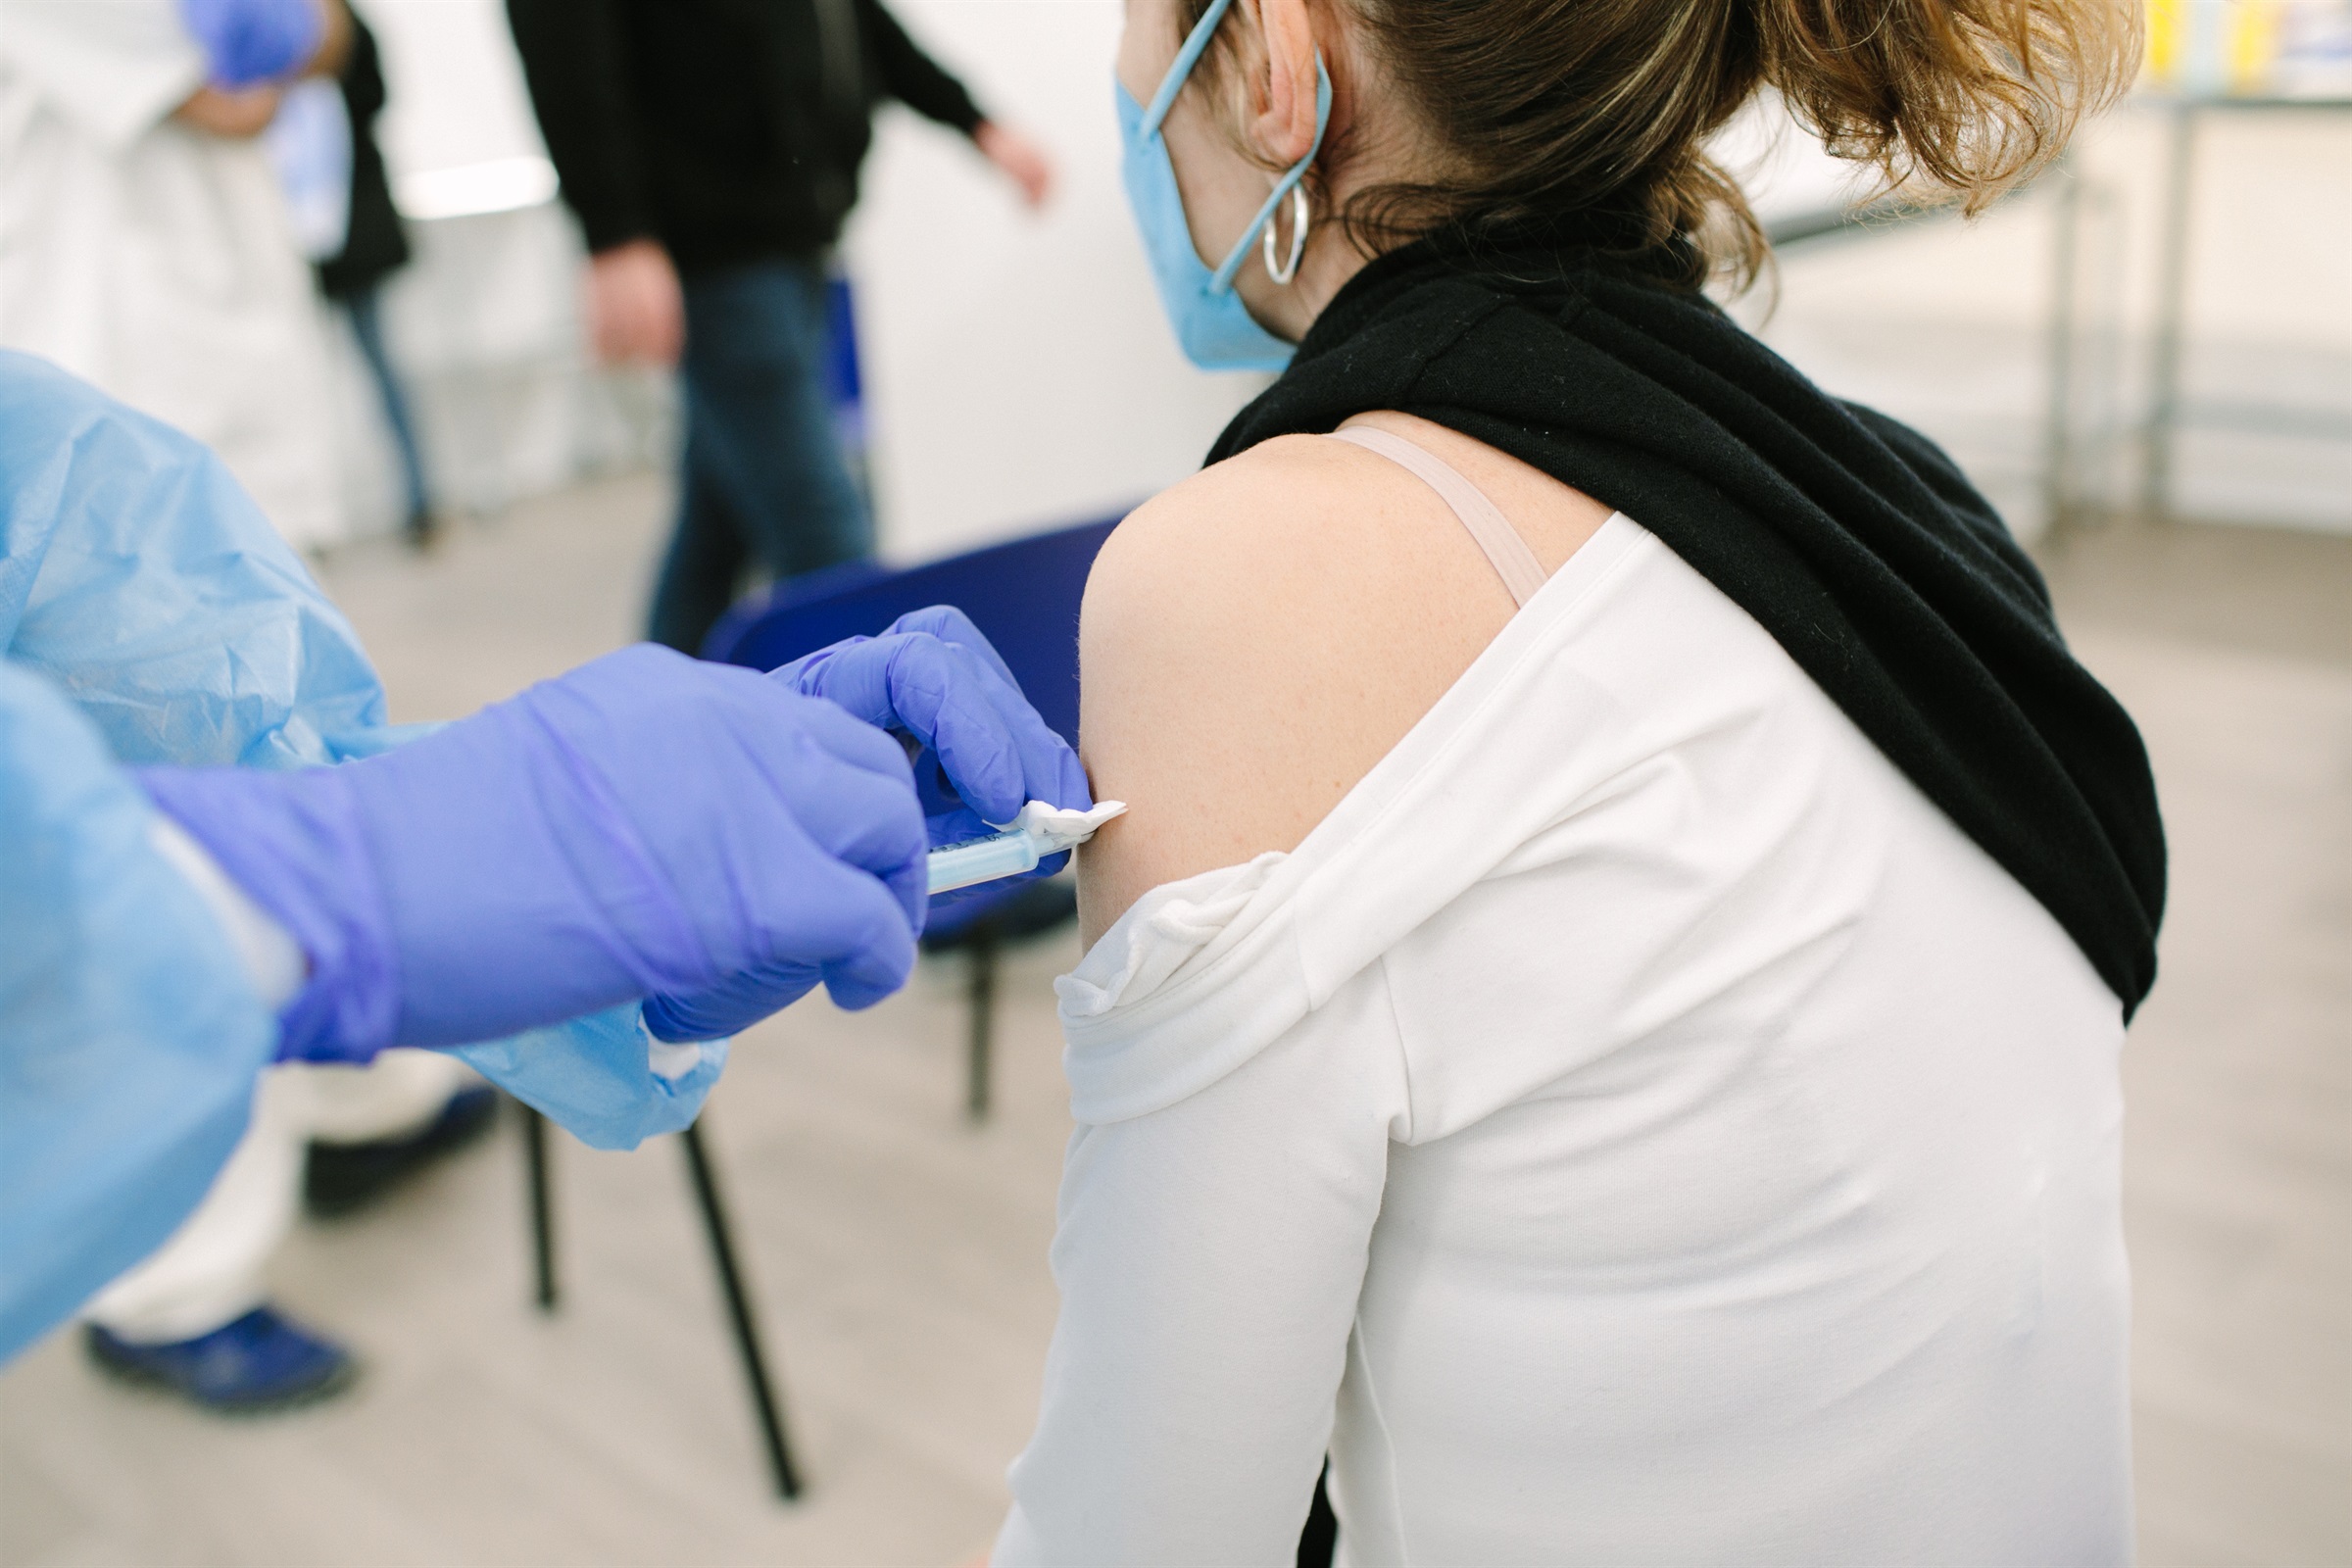 El Col·legi d’Infermeres de Barcelona adverteix que és il·legal que els TCAI administrin vacunes